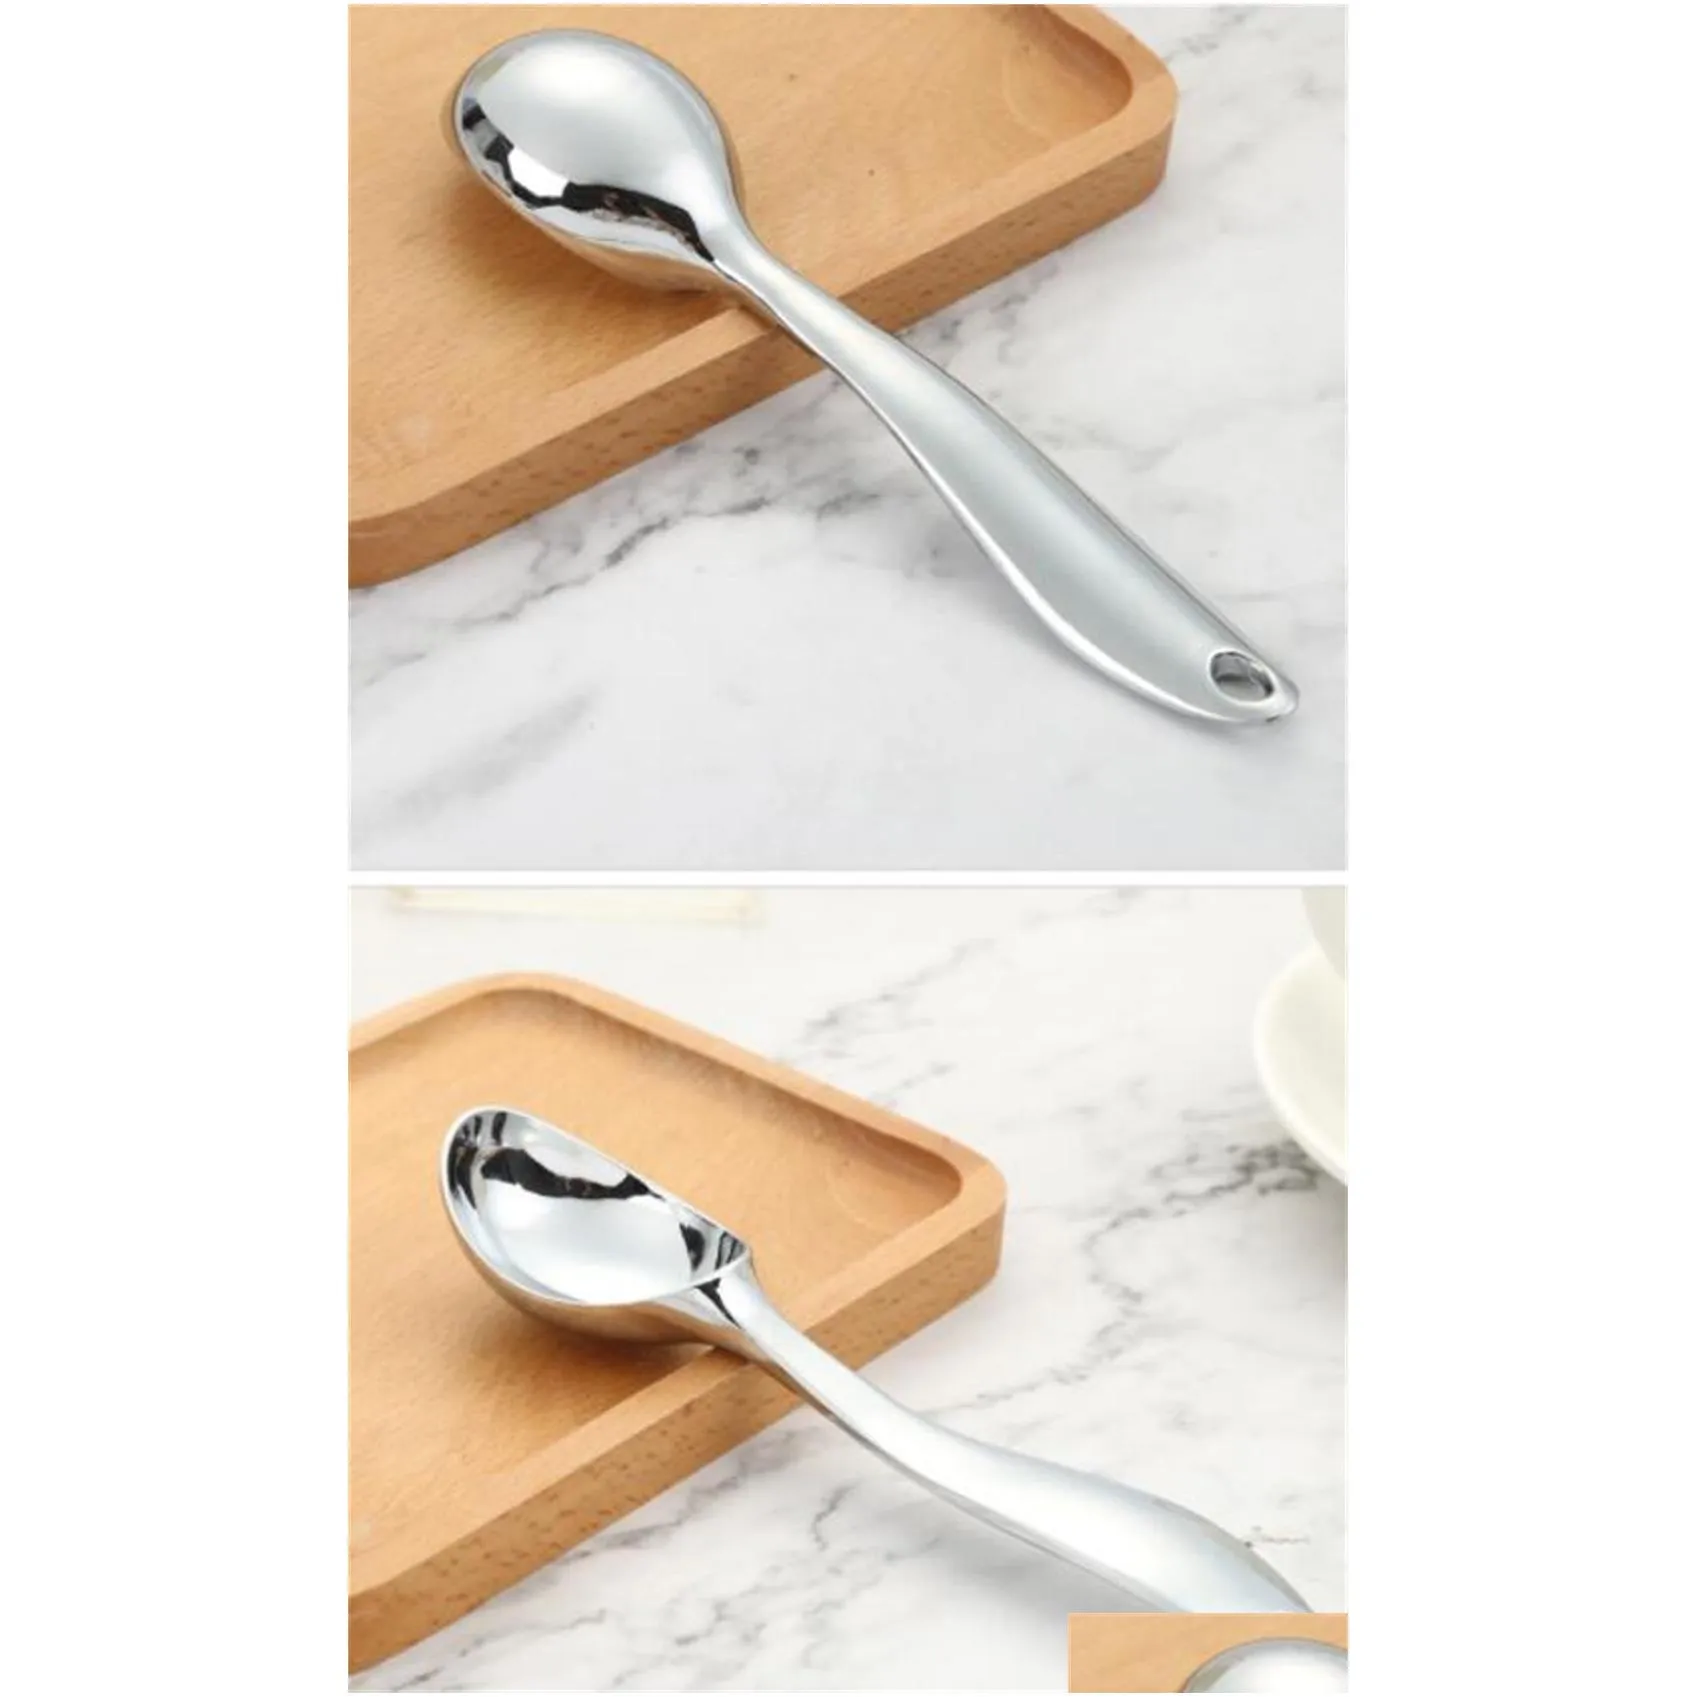 wholesale spoons ice cream scoop easy grip handle heavy duty icecream scoop with non-slip kd1